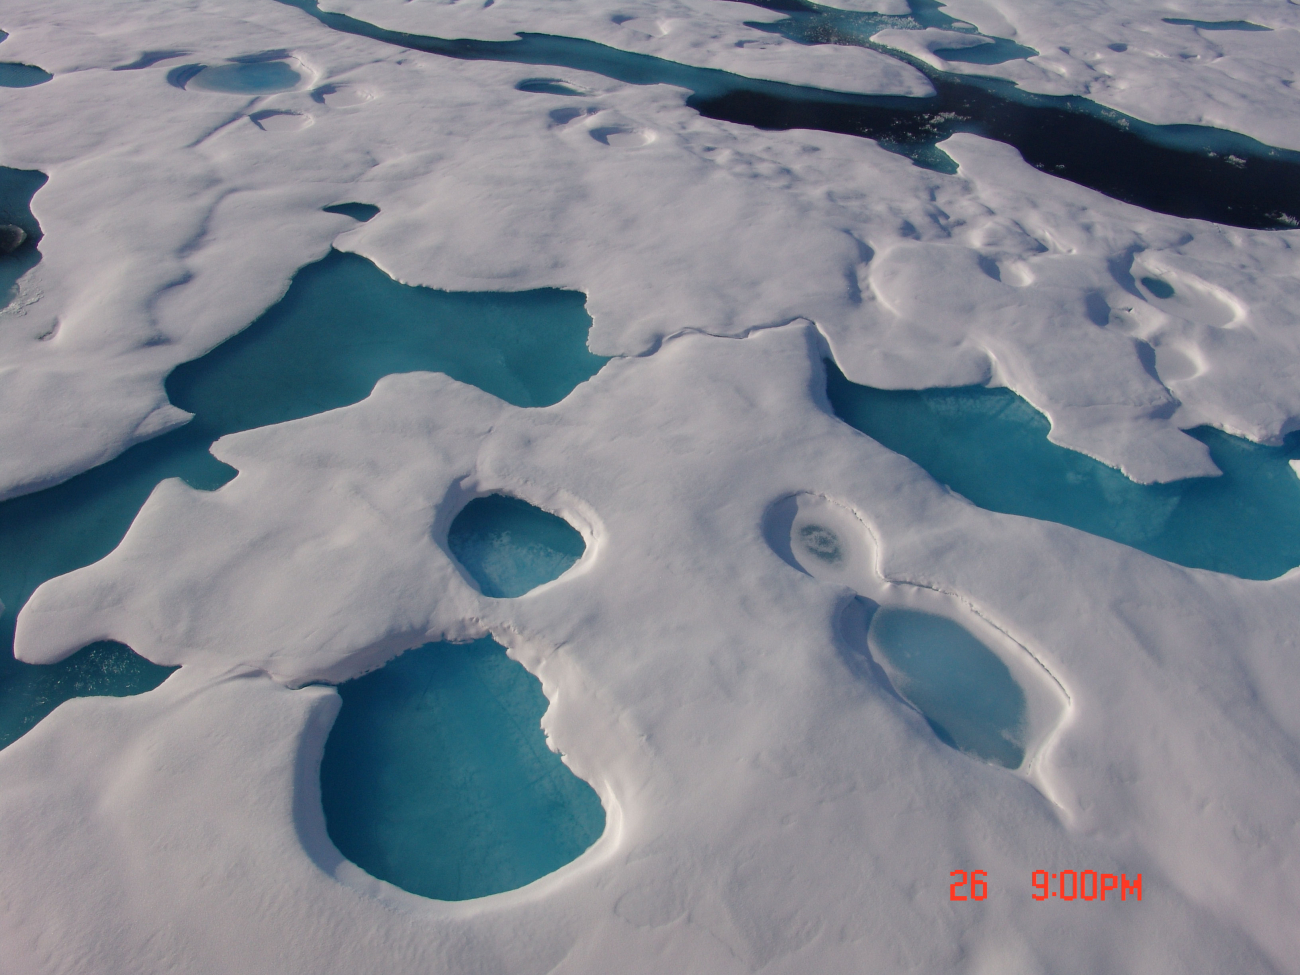 Aquamarine melt ponds in multi-year ice